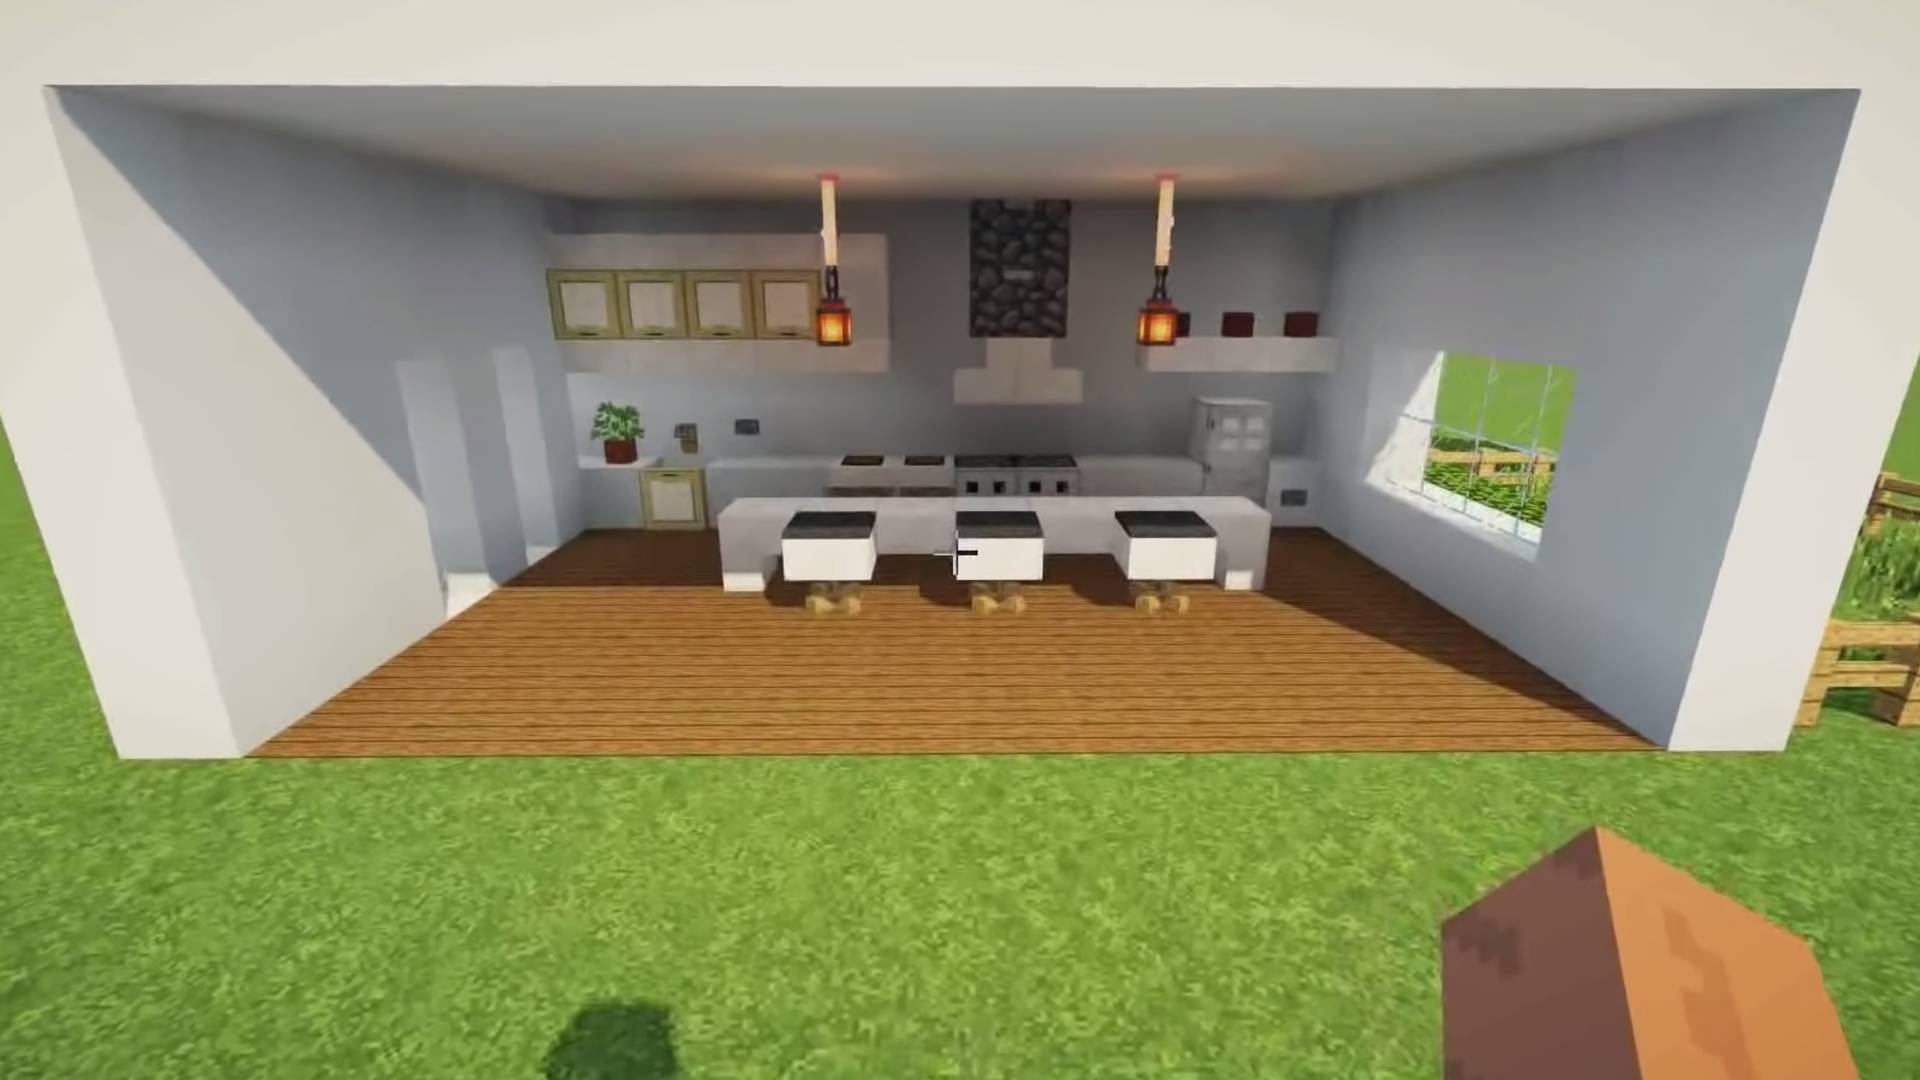 modern kitchen design in minecraft